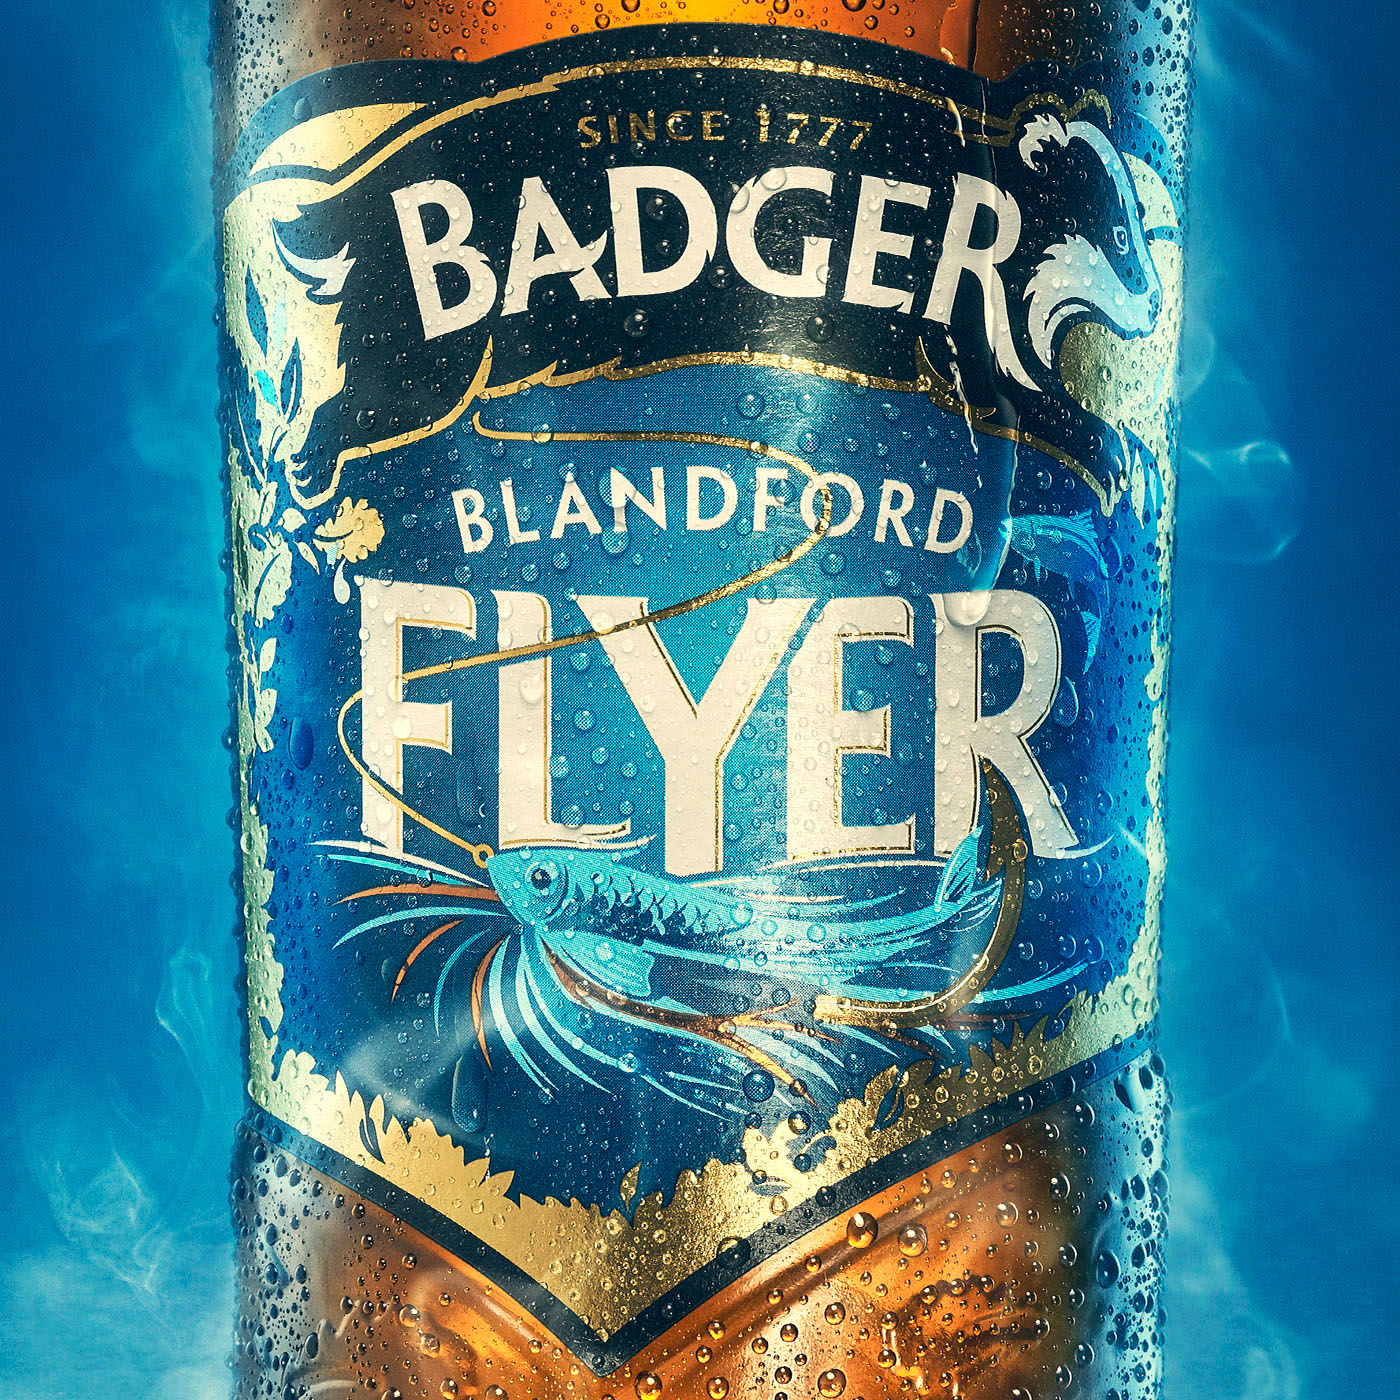 Bottle of Beer beer bottle badger Badger Beer product